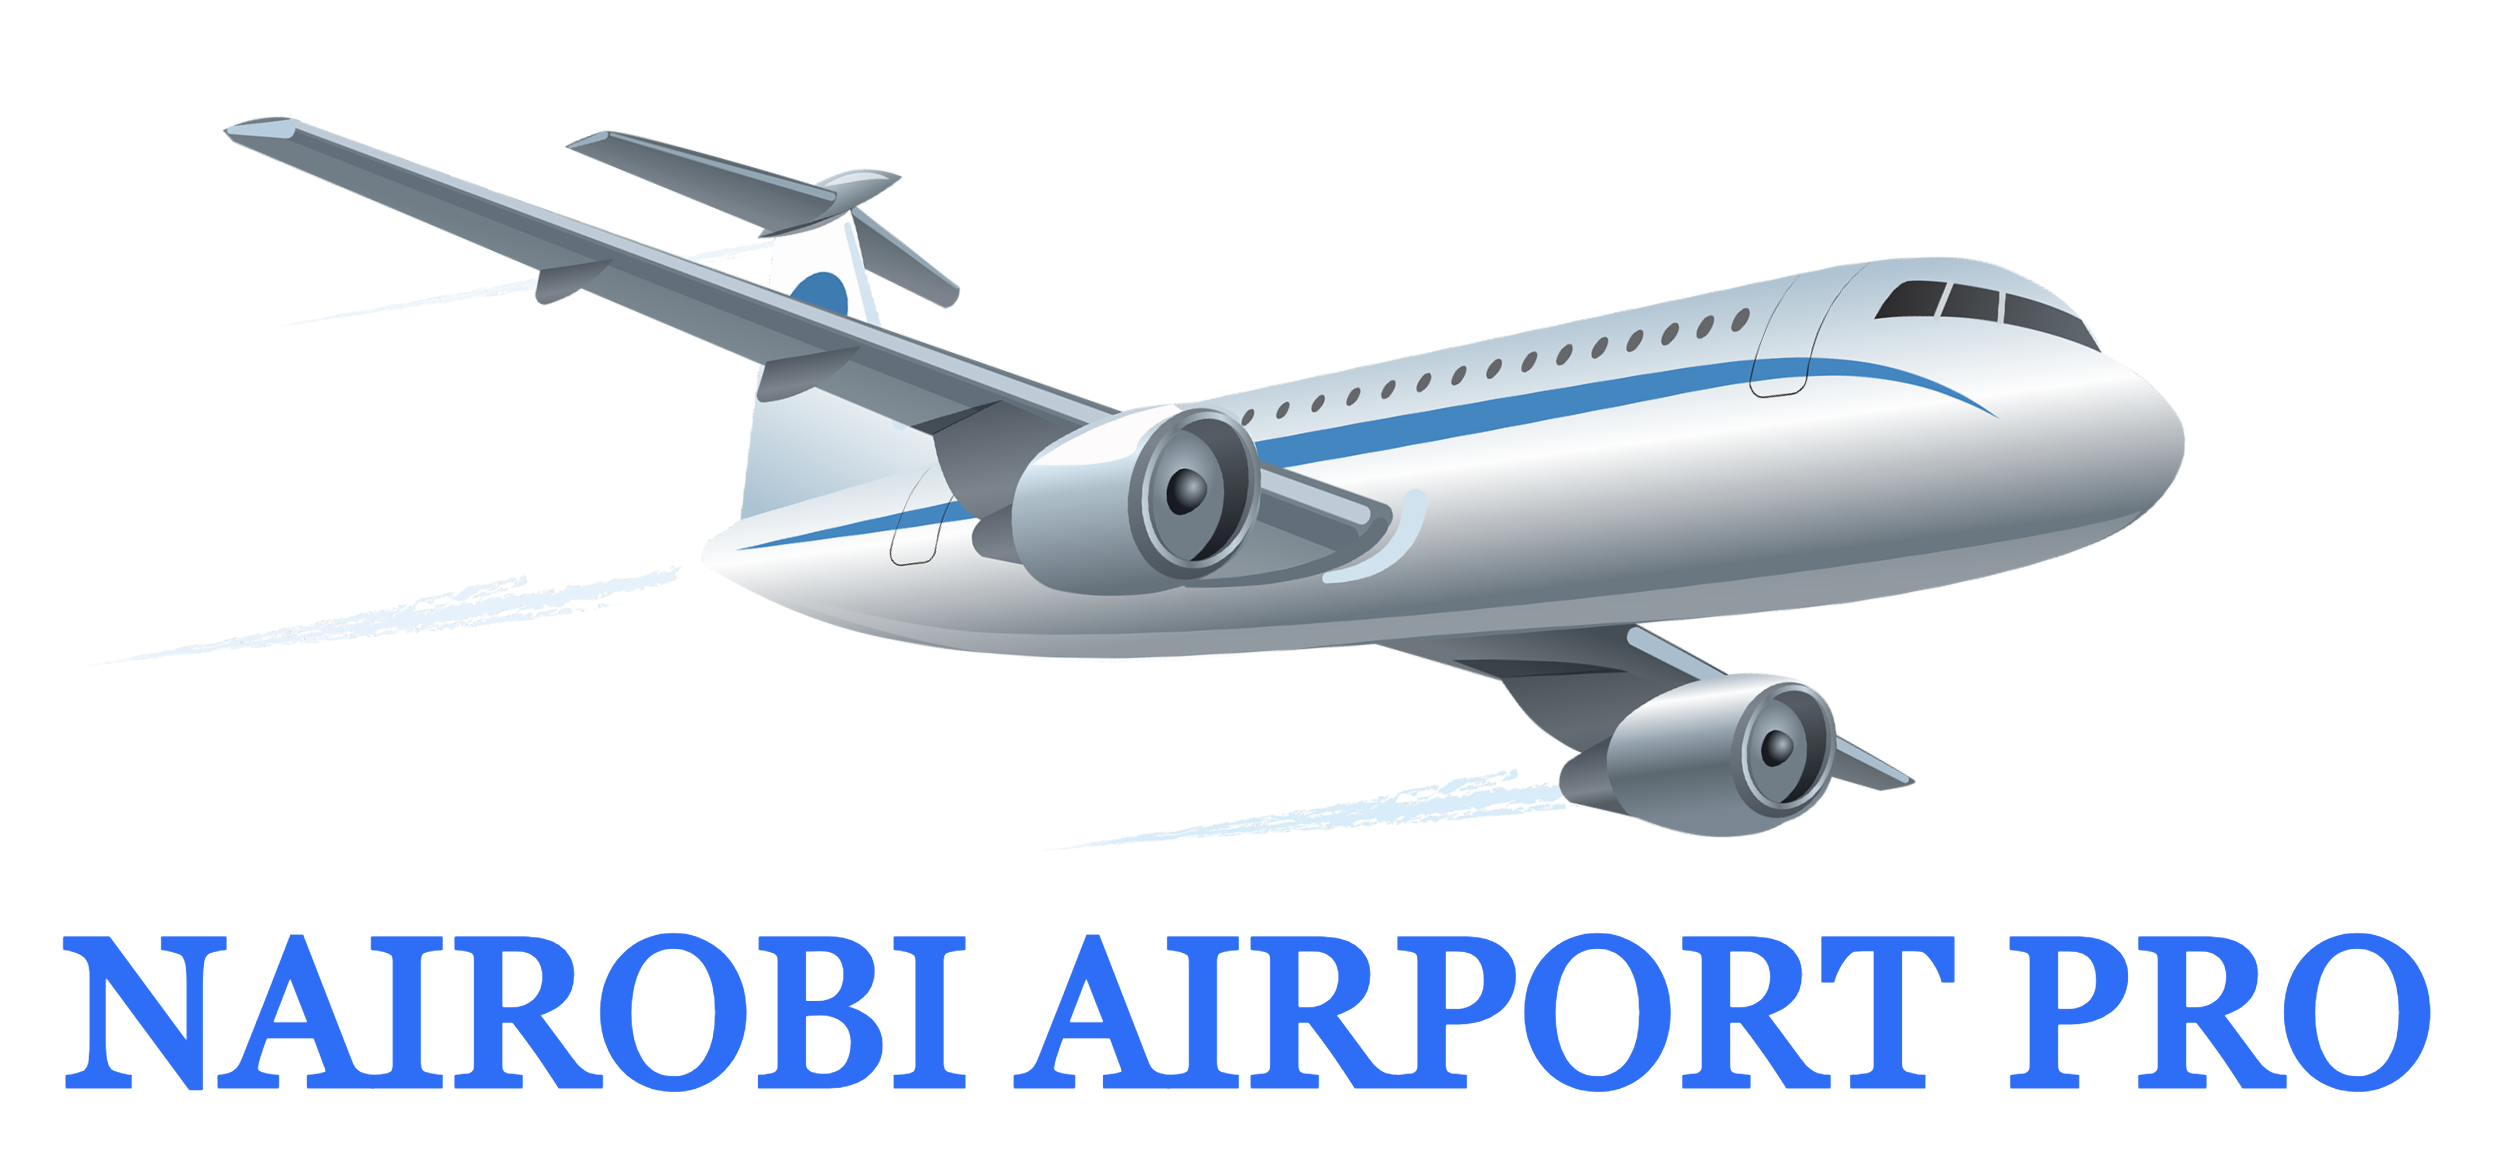 Nairobi Airport Pro | Mathare - Nairobi Airport Pro